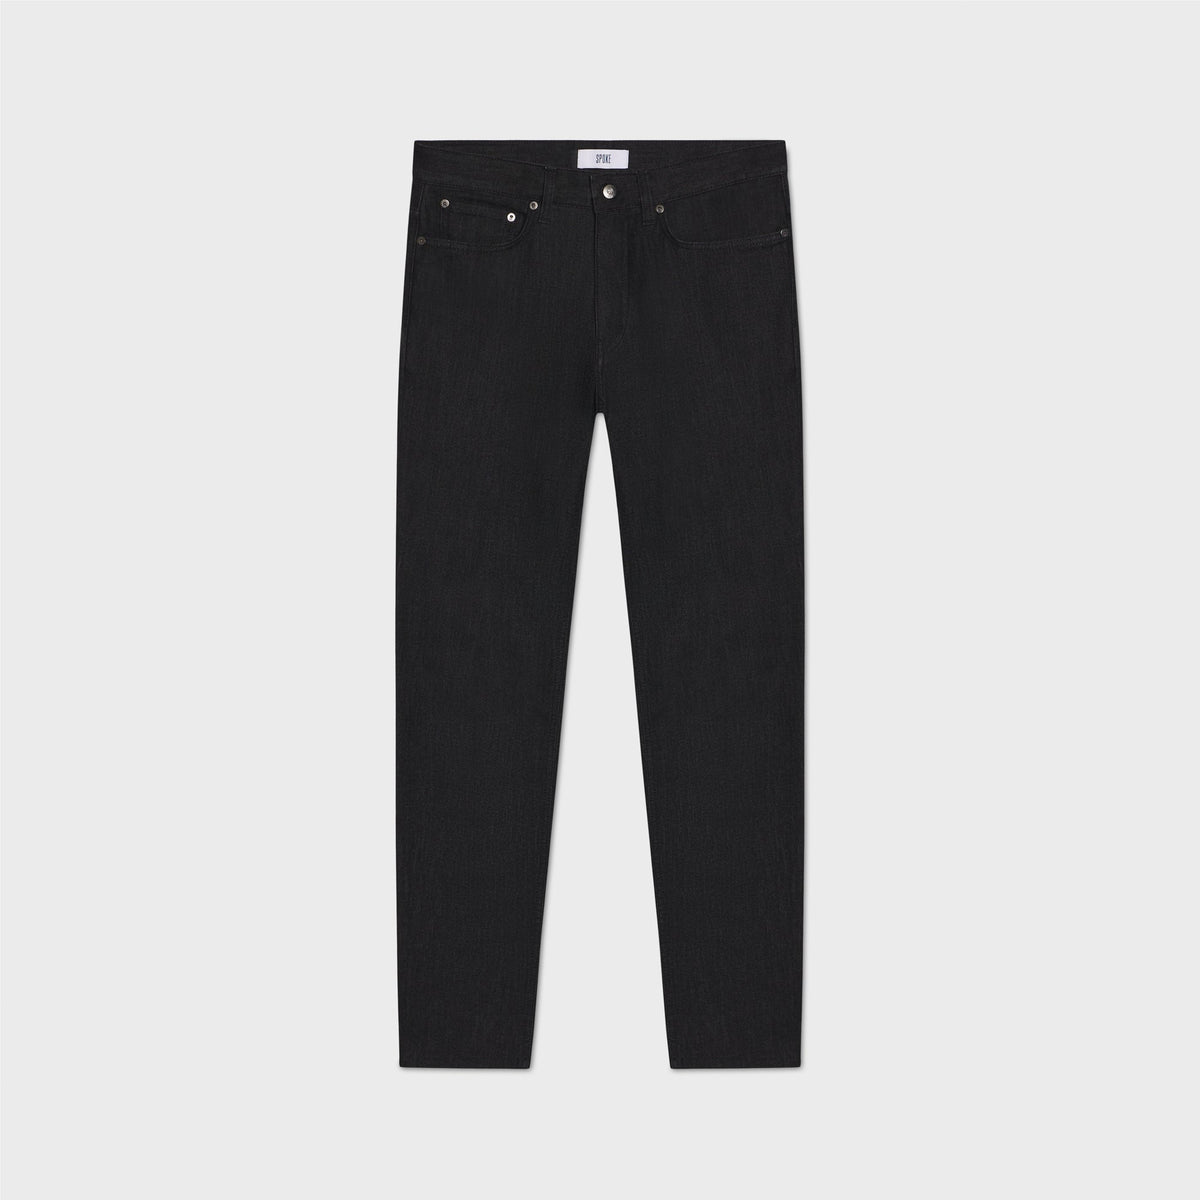 SPOKE 12oz Denim - Black Custom Fit Jeans - SPOKE